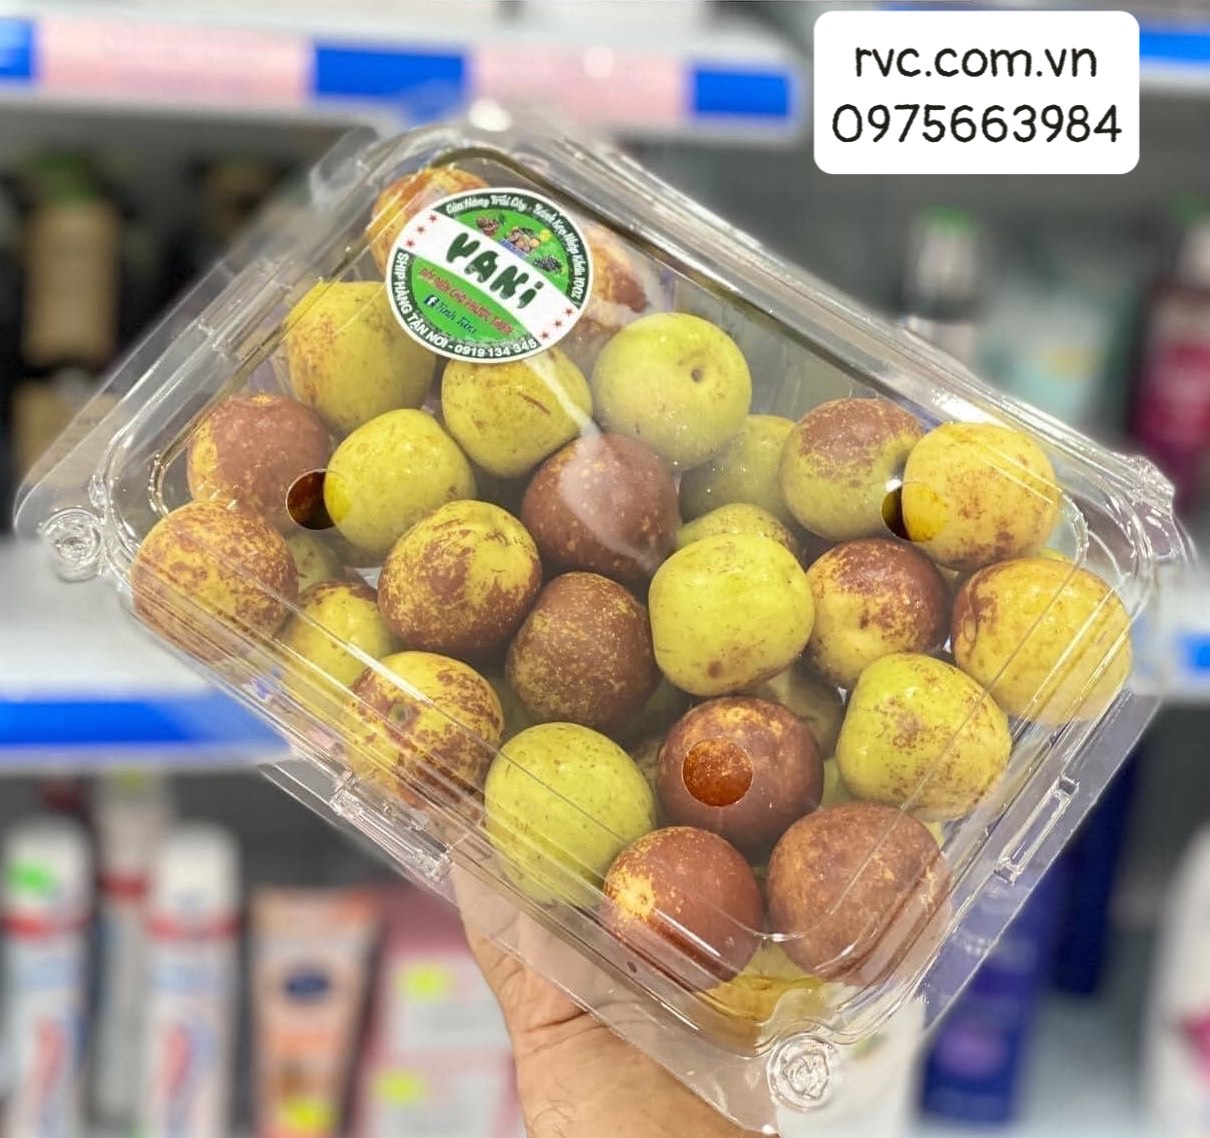 Mua hộp nhựa trái cây 1kg chất lượng, giá tốt tại tp.hcm.  1679719862_Hop_nhua_dung_hong_tao_22